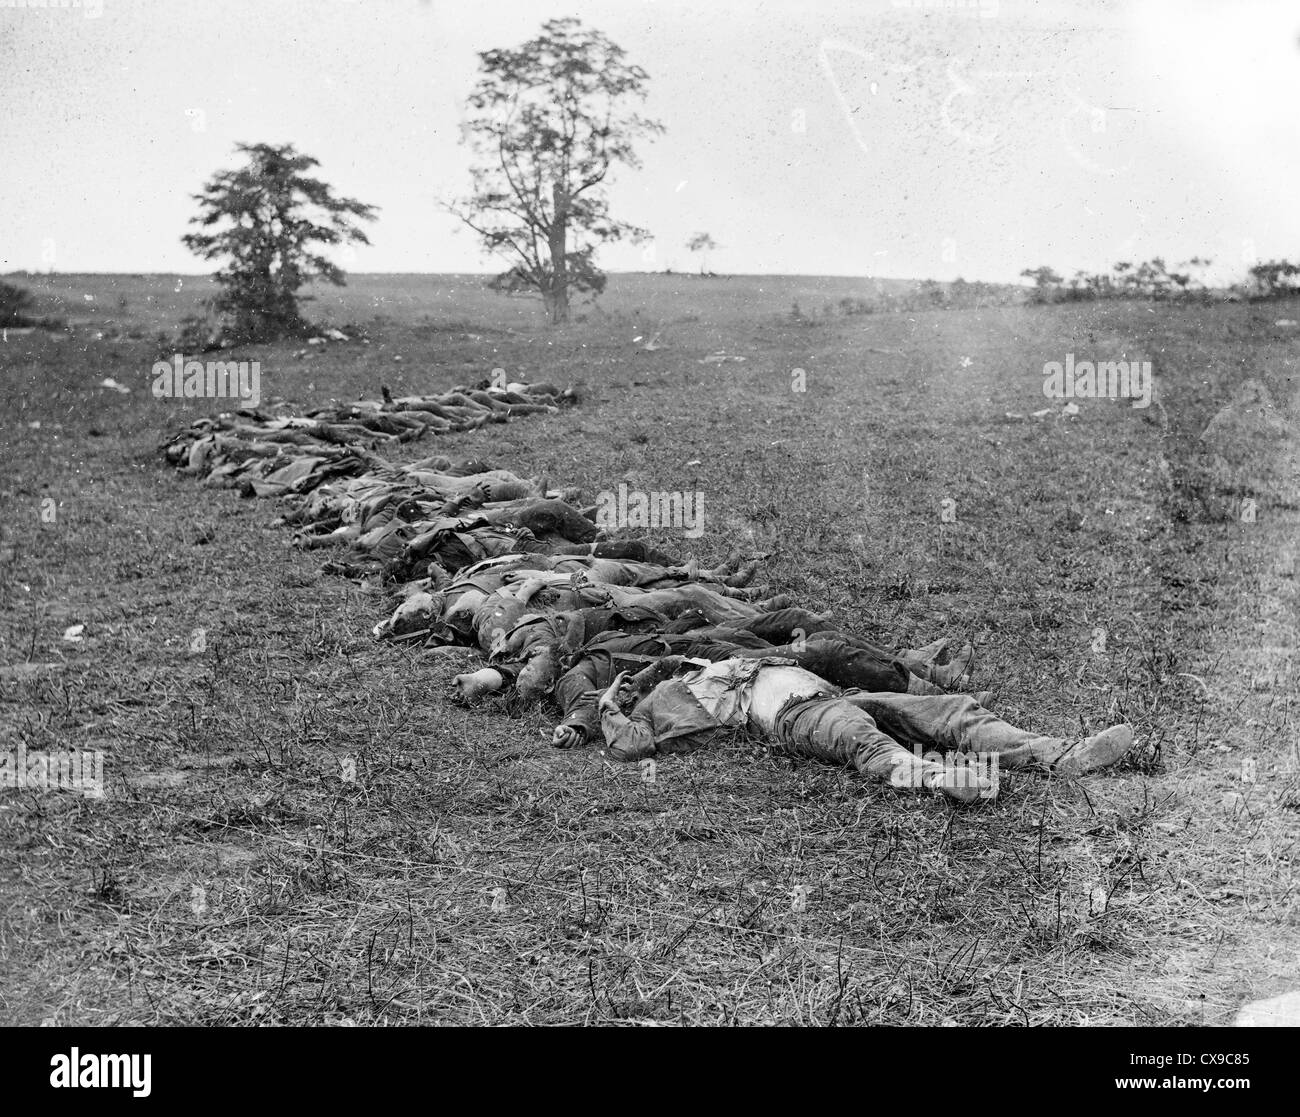 Schlacht von Antietam, auch bekannt als die Schlacht von Sharpsburg, Amerikanischer Bürgerkrieg Stockfoto